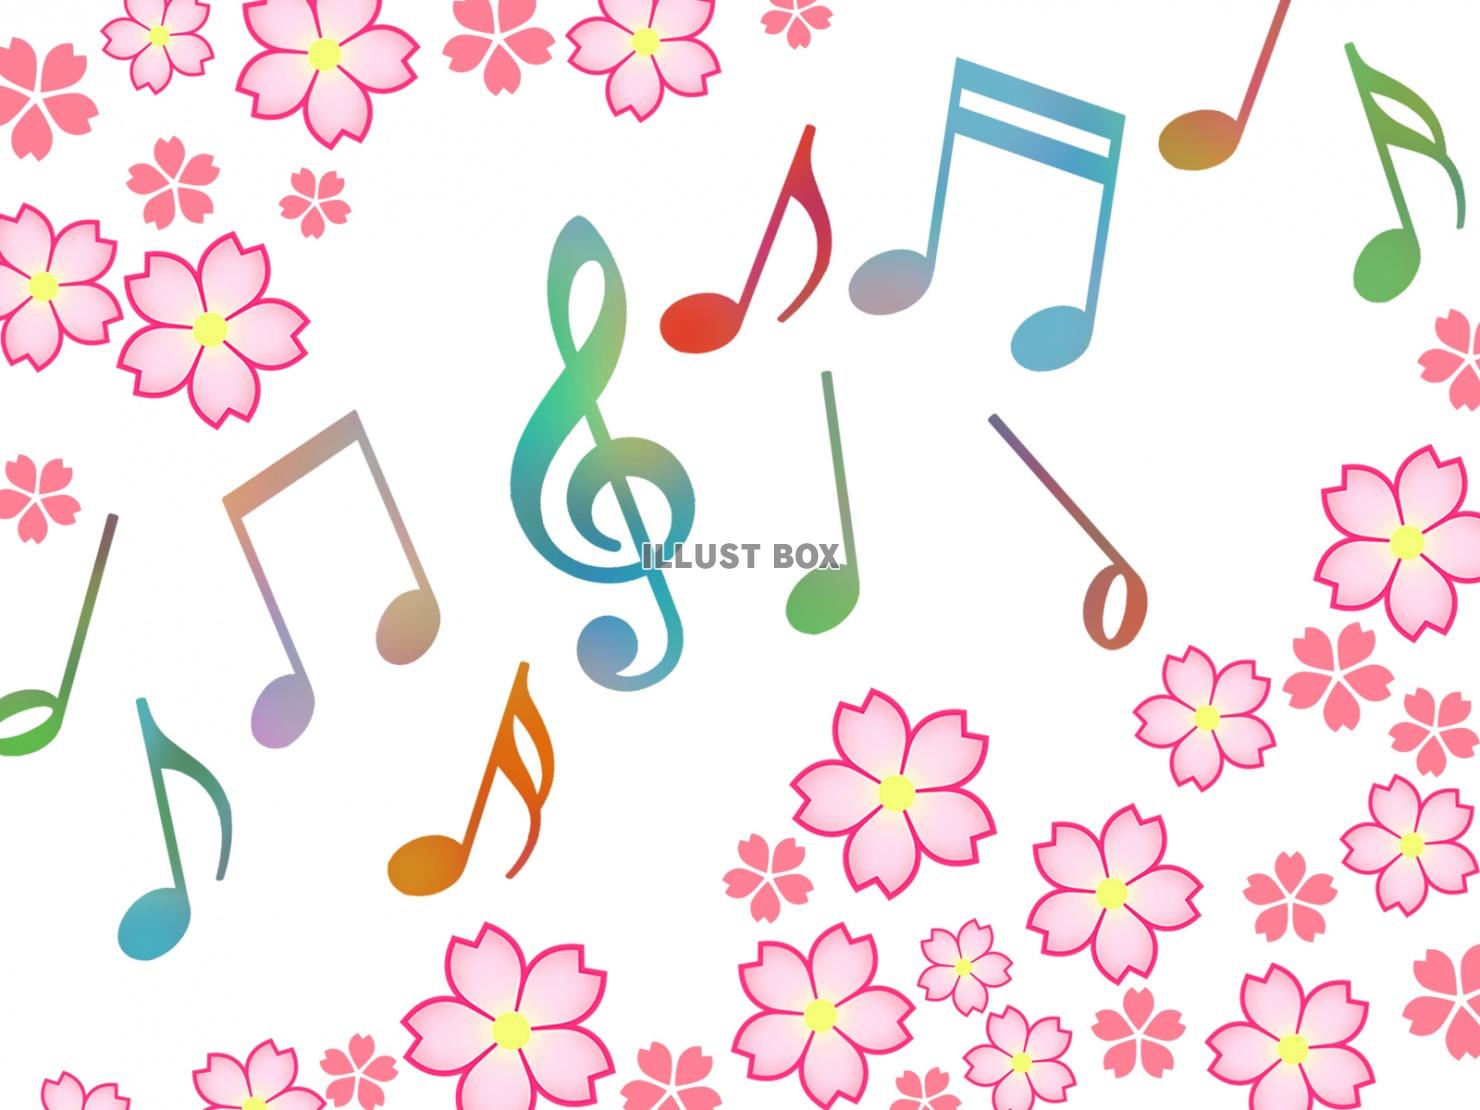 音符と桜の花模様の壁紙シンプル背景素材イラスト